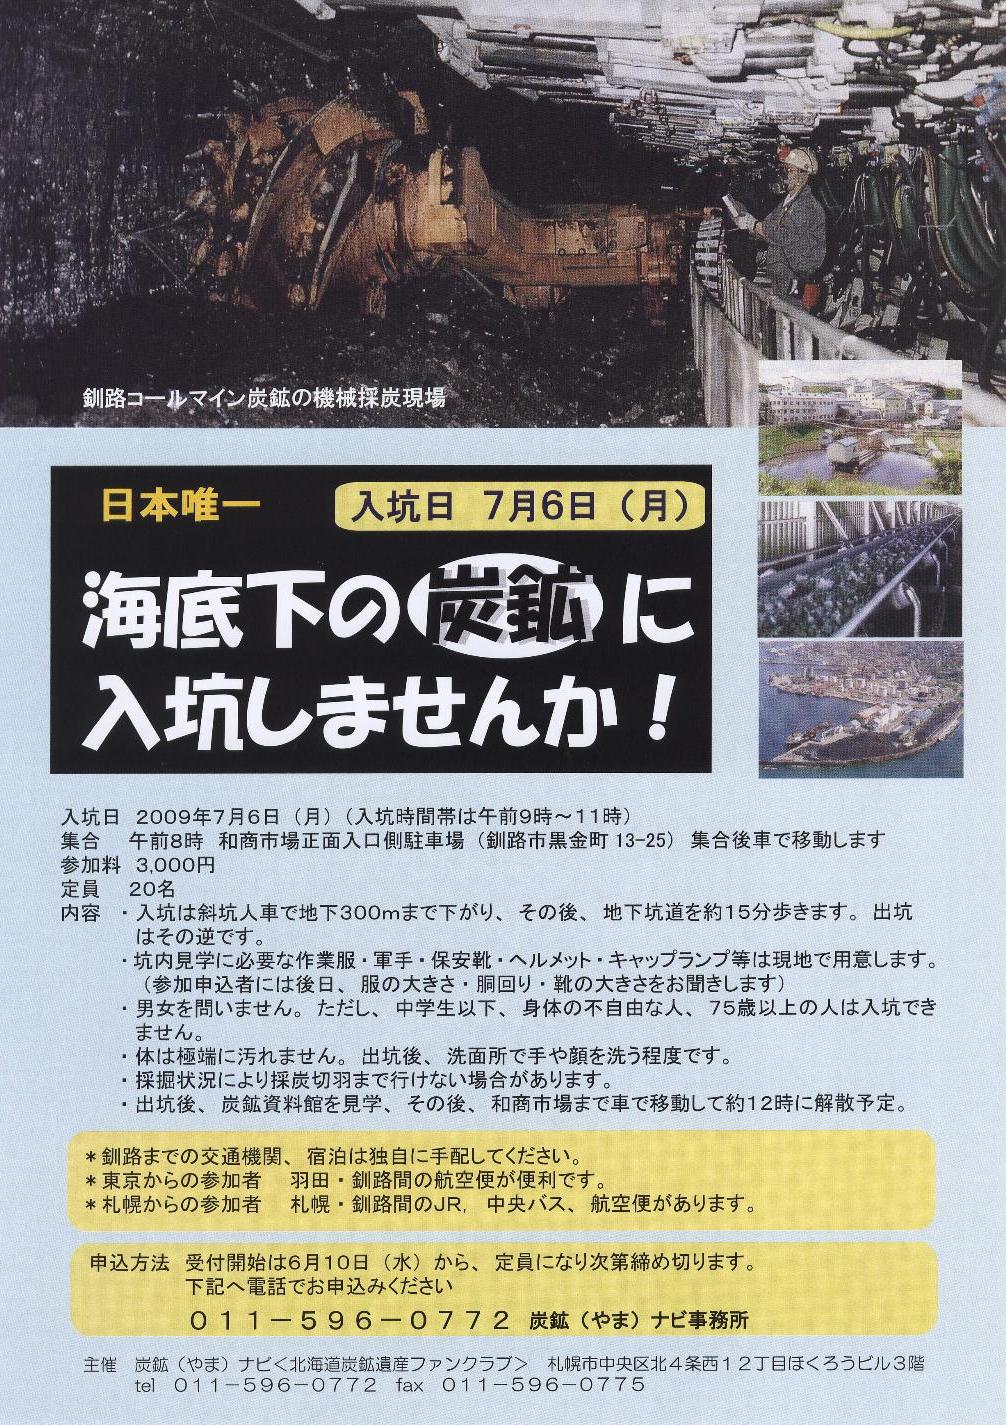 見学会 釧路コールマイン炭鉱 体験入坑 日本唯一 海底下の炭鉱に入坑しませんか 7月6日 月 3000円 栄通の案内版